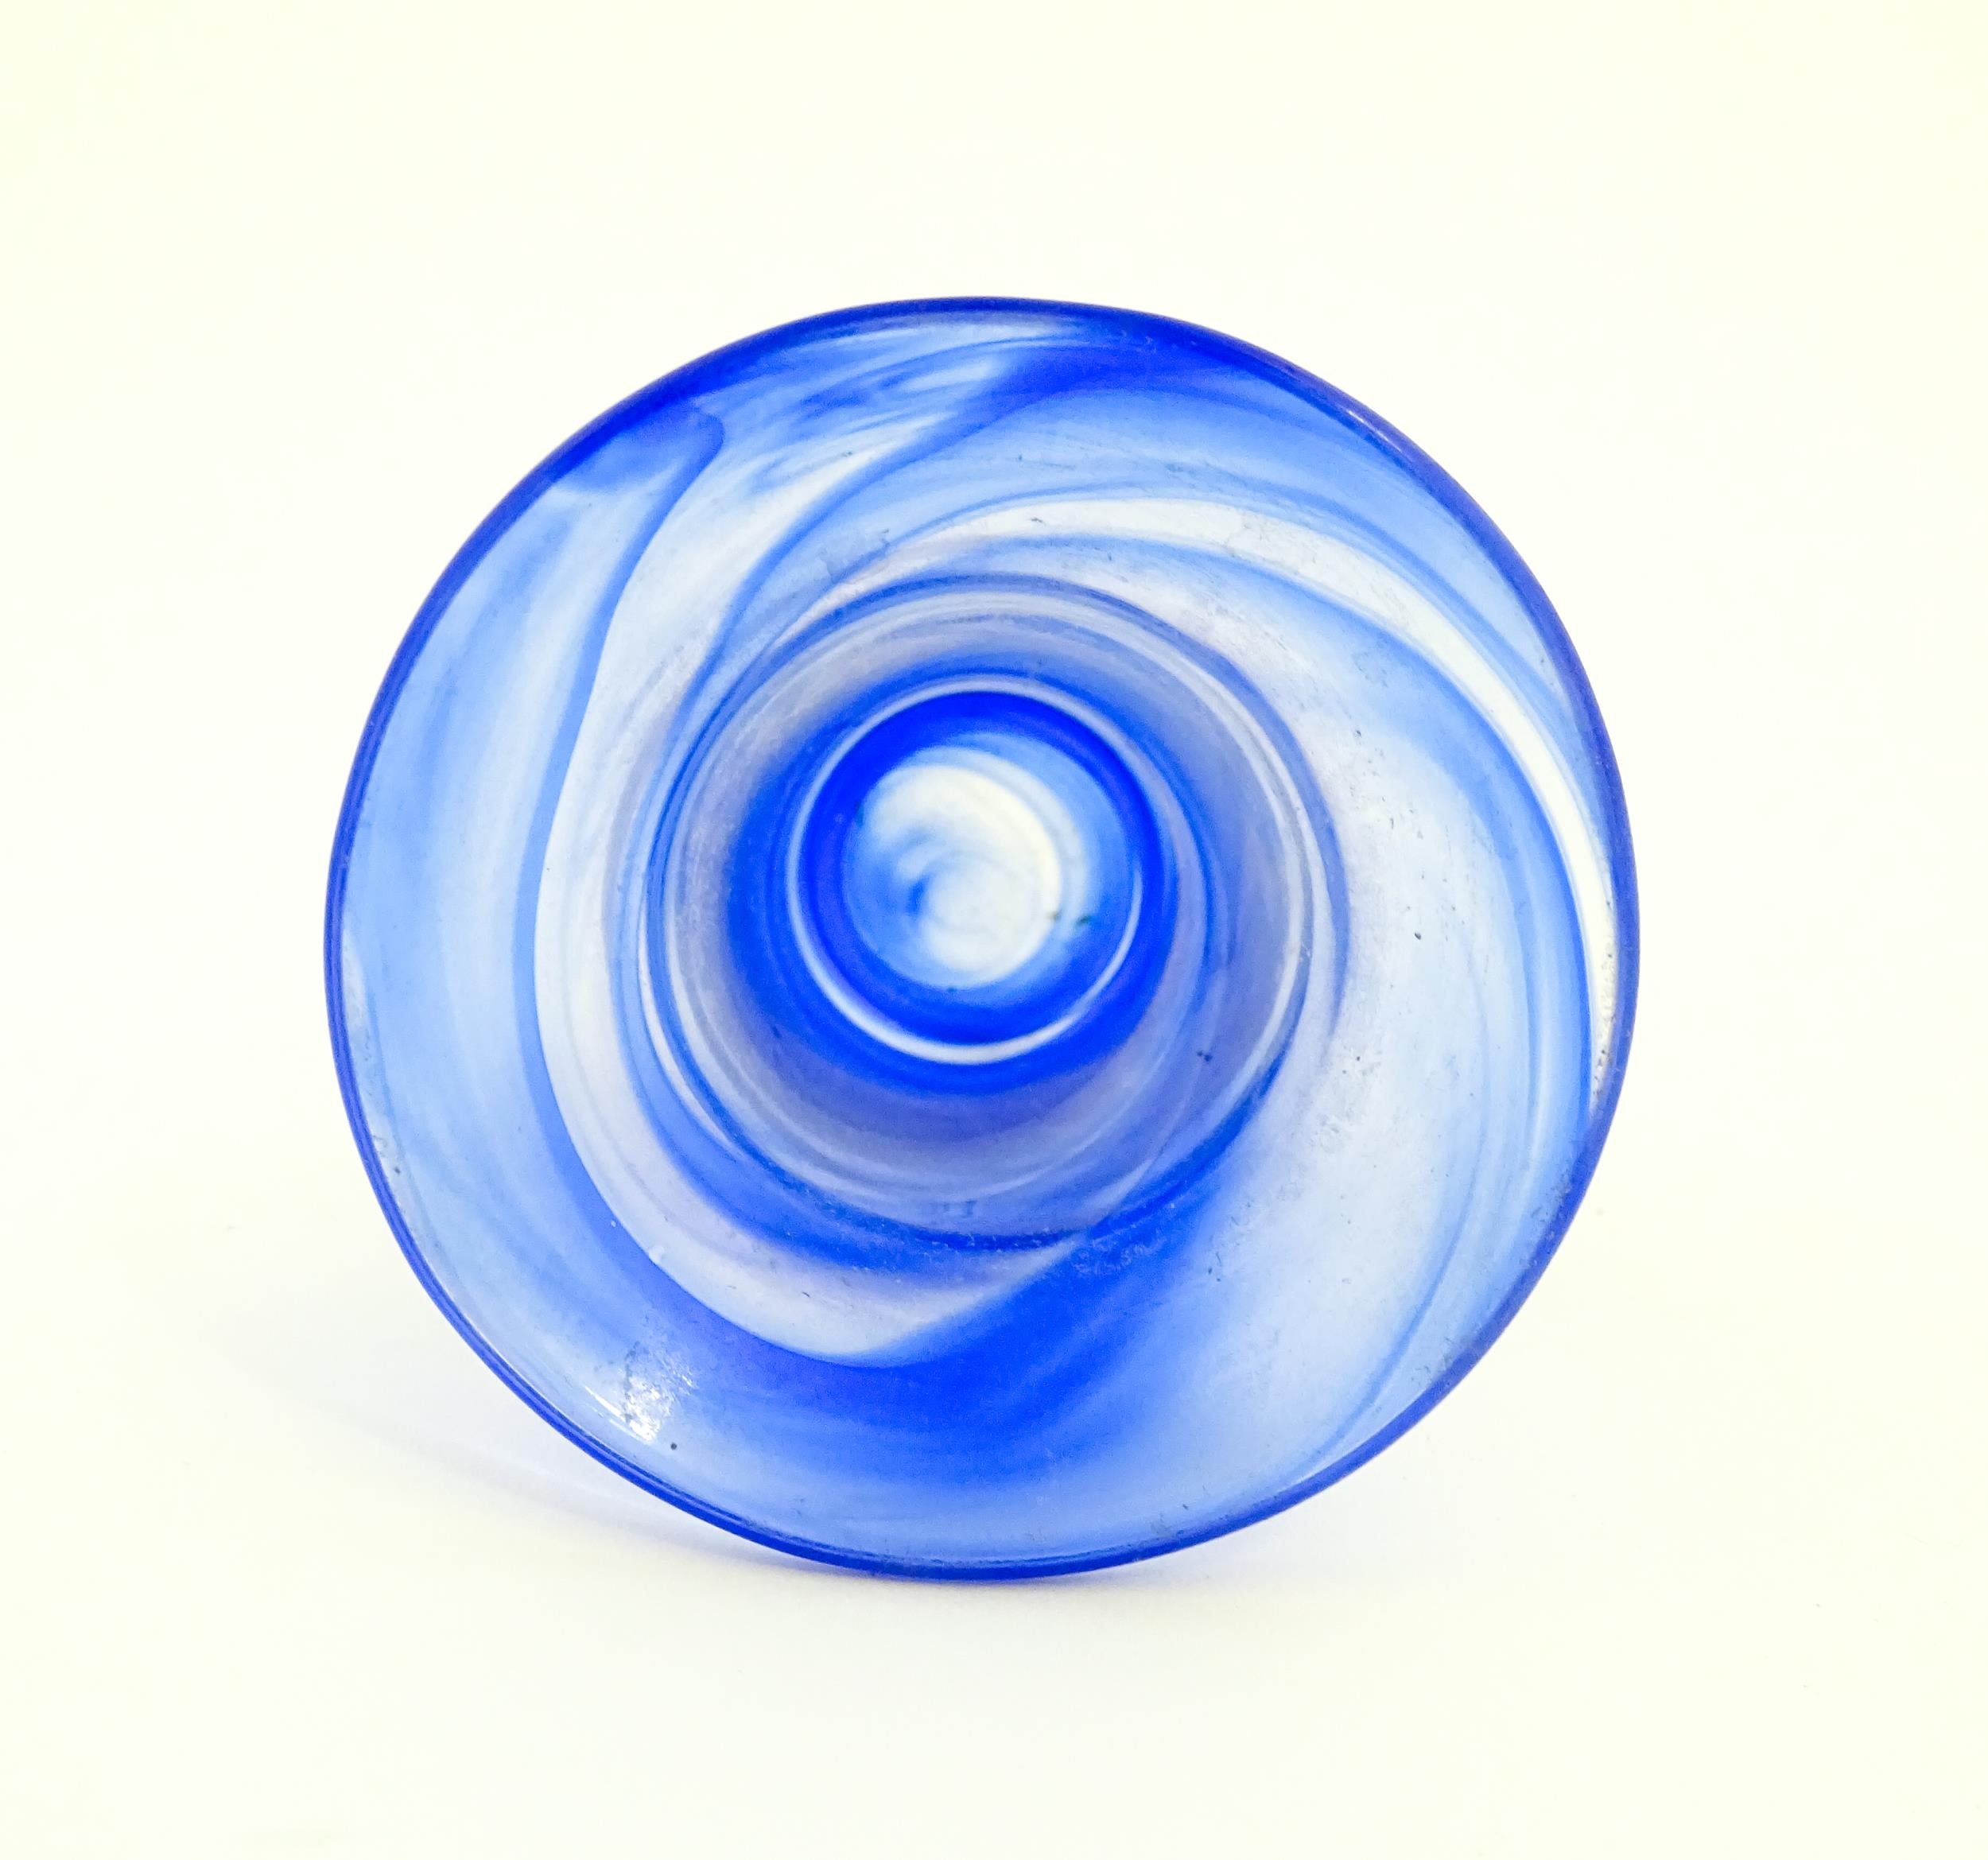 A Swedish Vas Vitreum blue glass vase with flared rim, signed under Vas Vitreum Sweden. Approx. 4 - Image 6 of 6